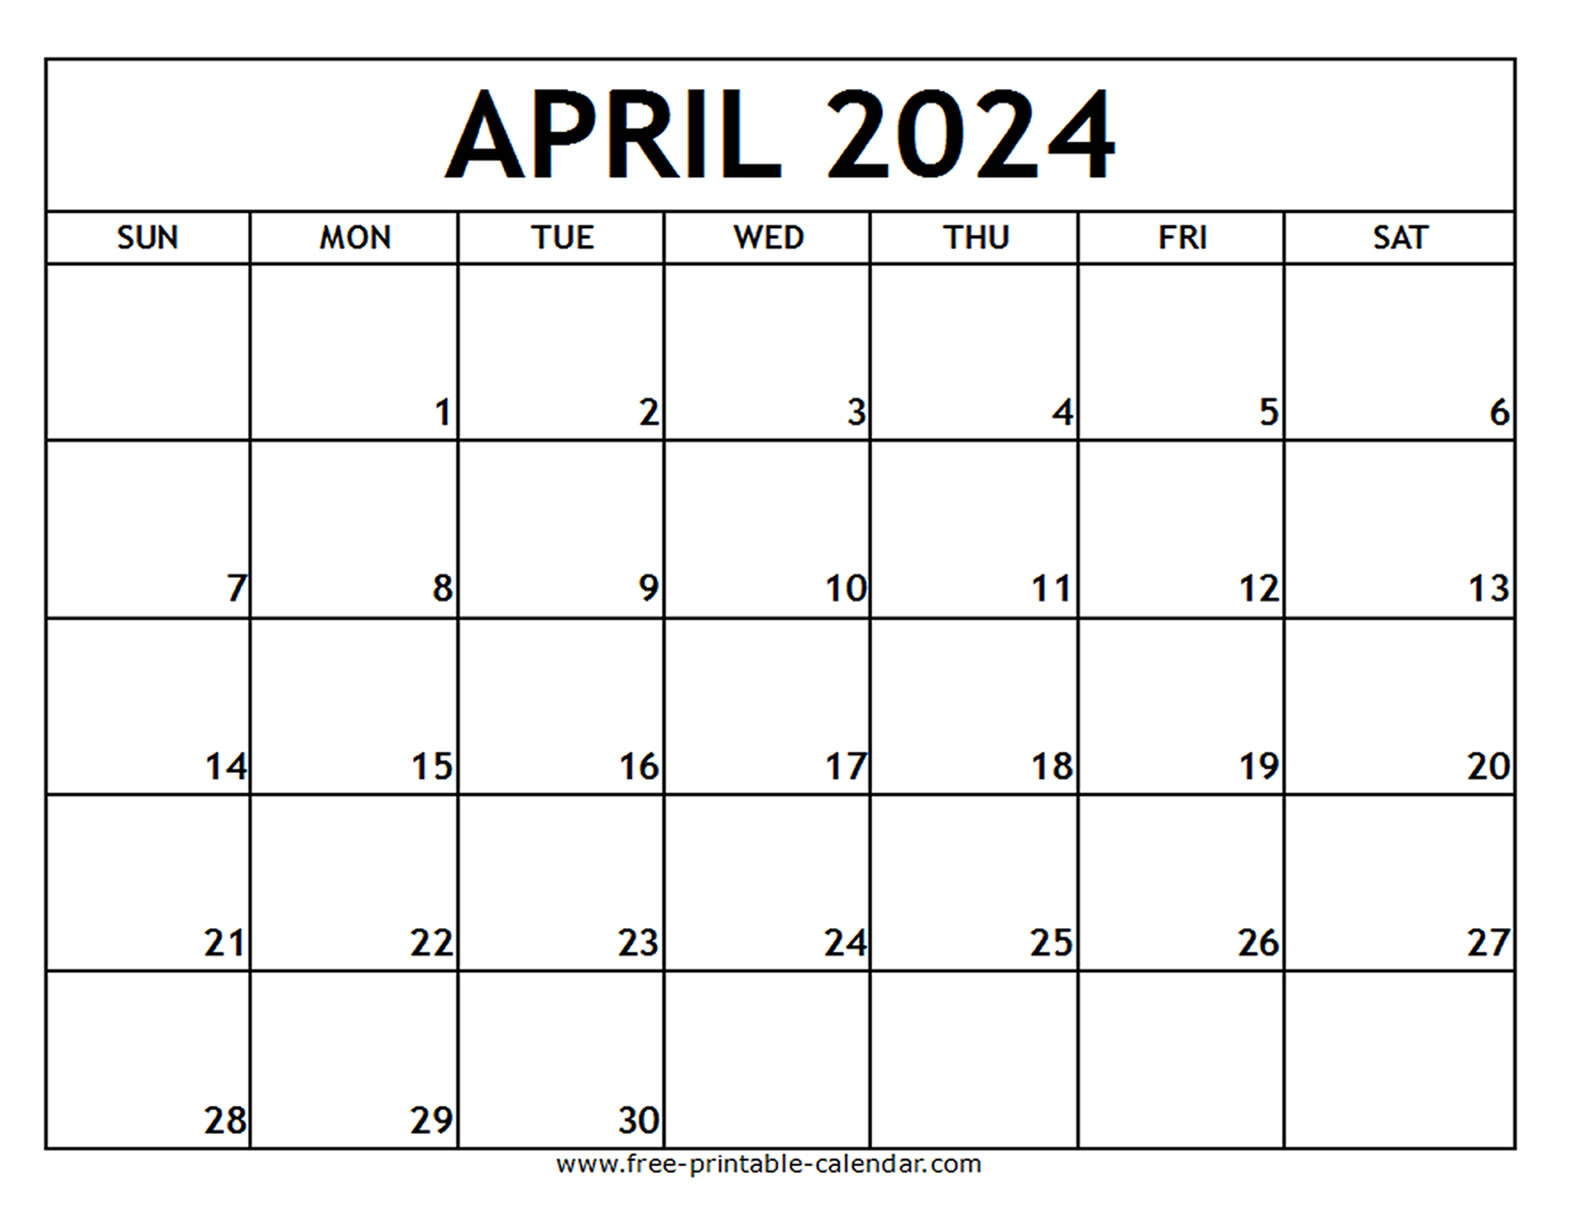 April 2024 Printable Calendar - Free-Printable-Calendar intended for Free Printable Calendar 2024 April May June